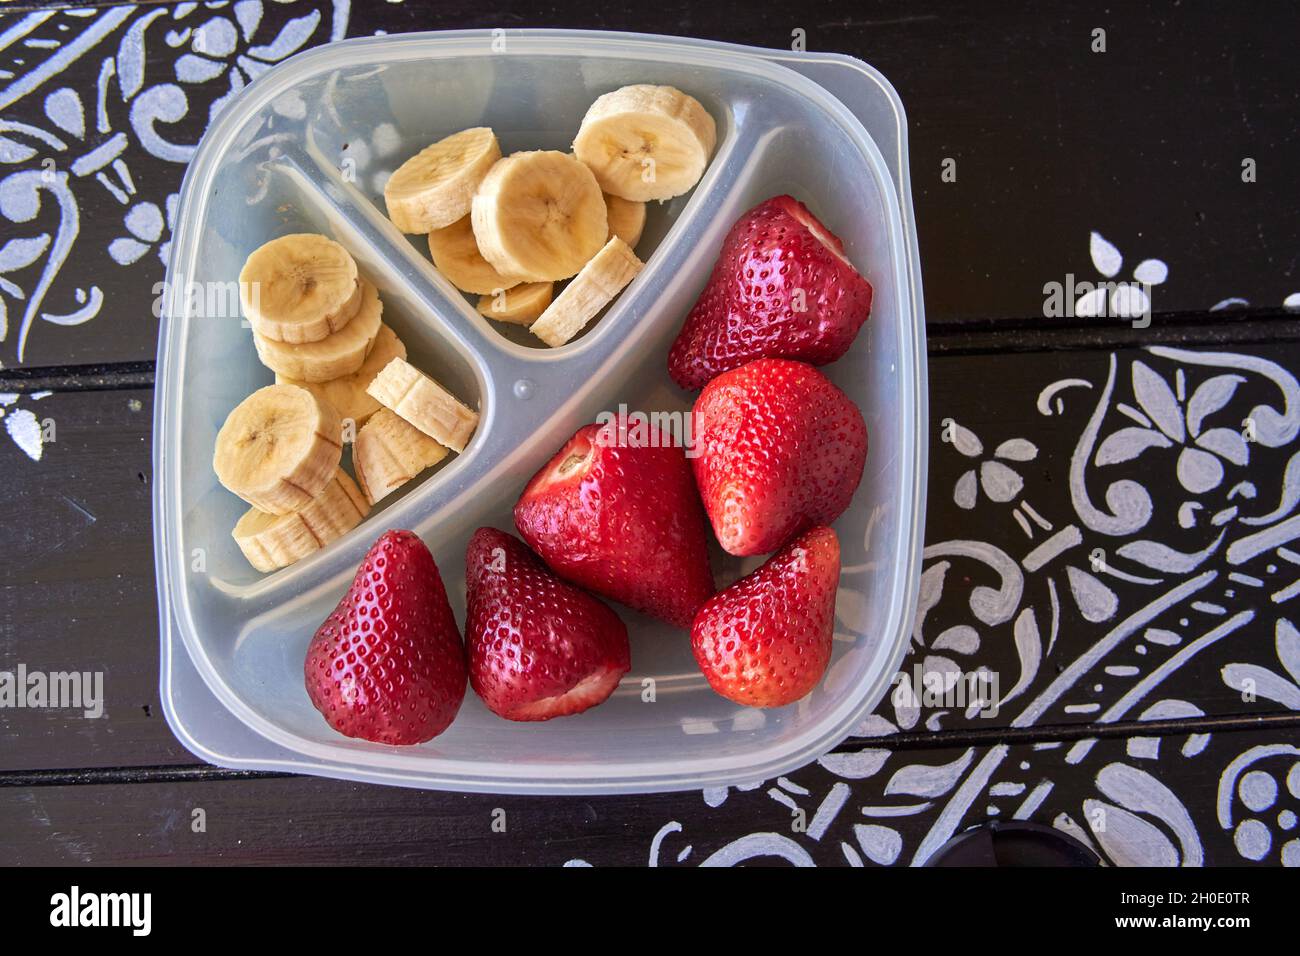 en-cas de fruits sains pour les enfants à emporter à l'école.Banane et fraise dans un bol sur une table en bois peinte en noir.Horizontale Banque D'Images